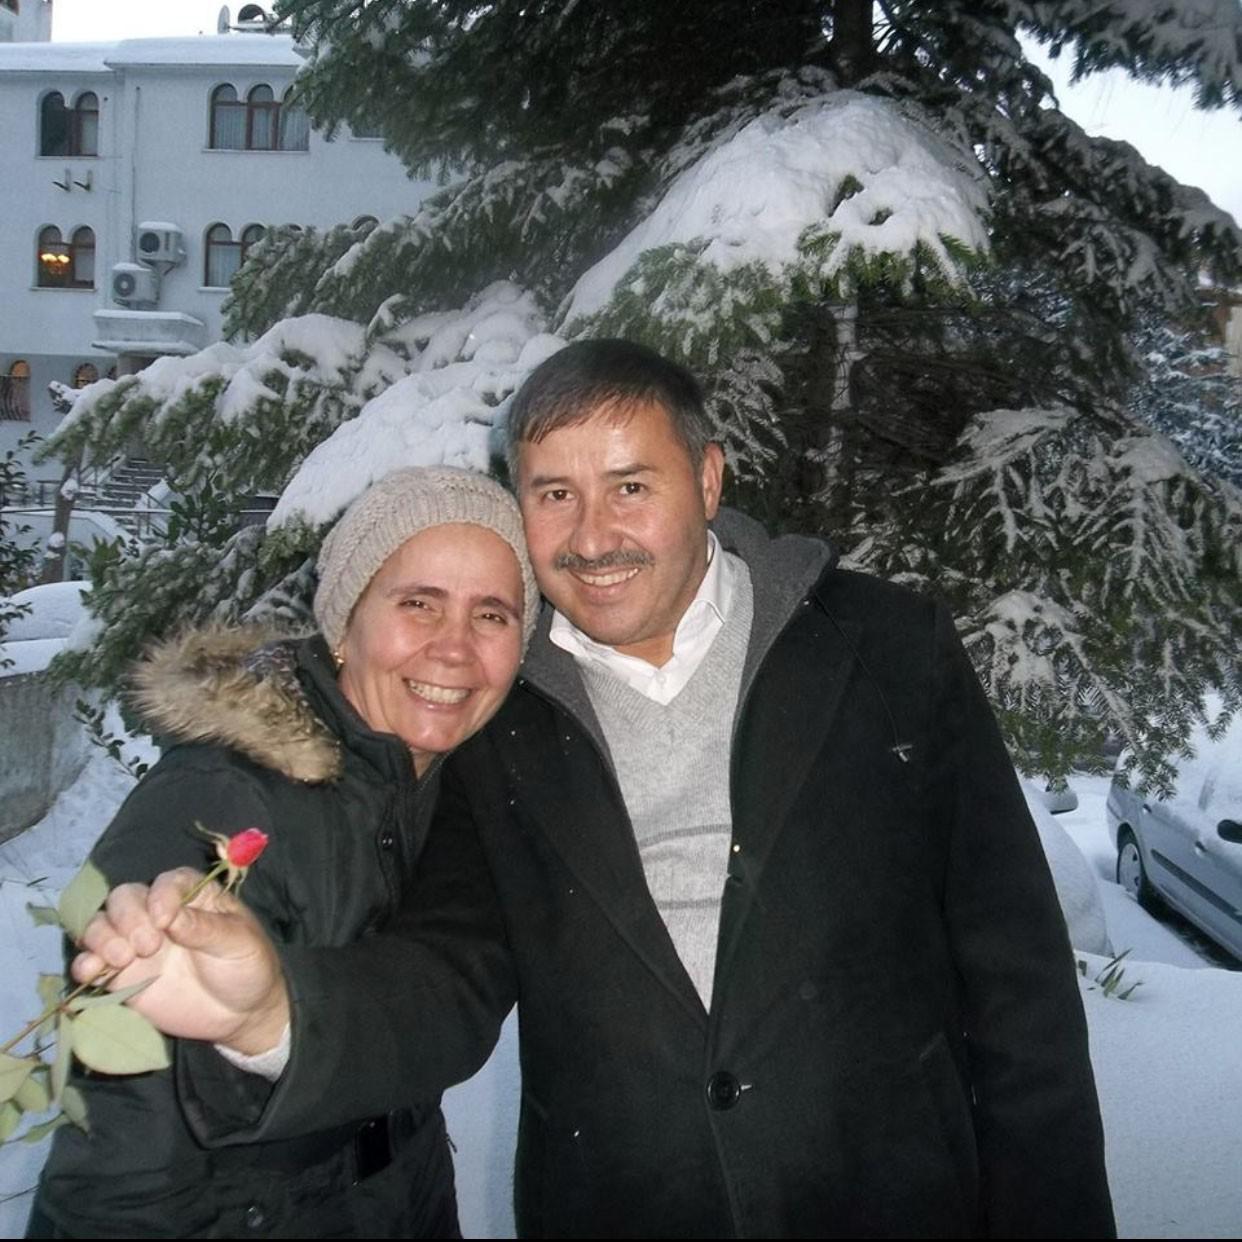 Beşiktaşta fitness hocası gürültü uyarısında bulunan kadını boğazını keserek öldürdü